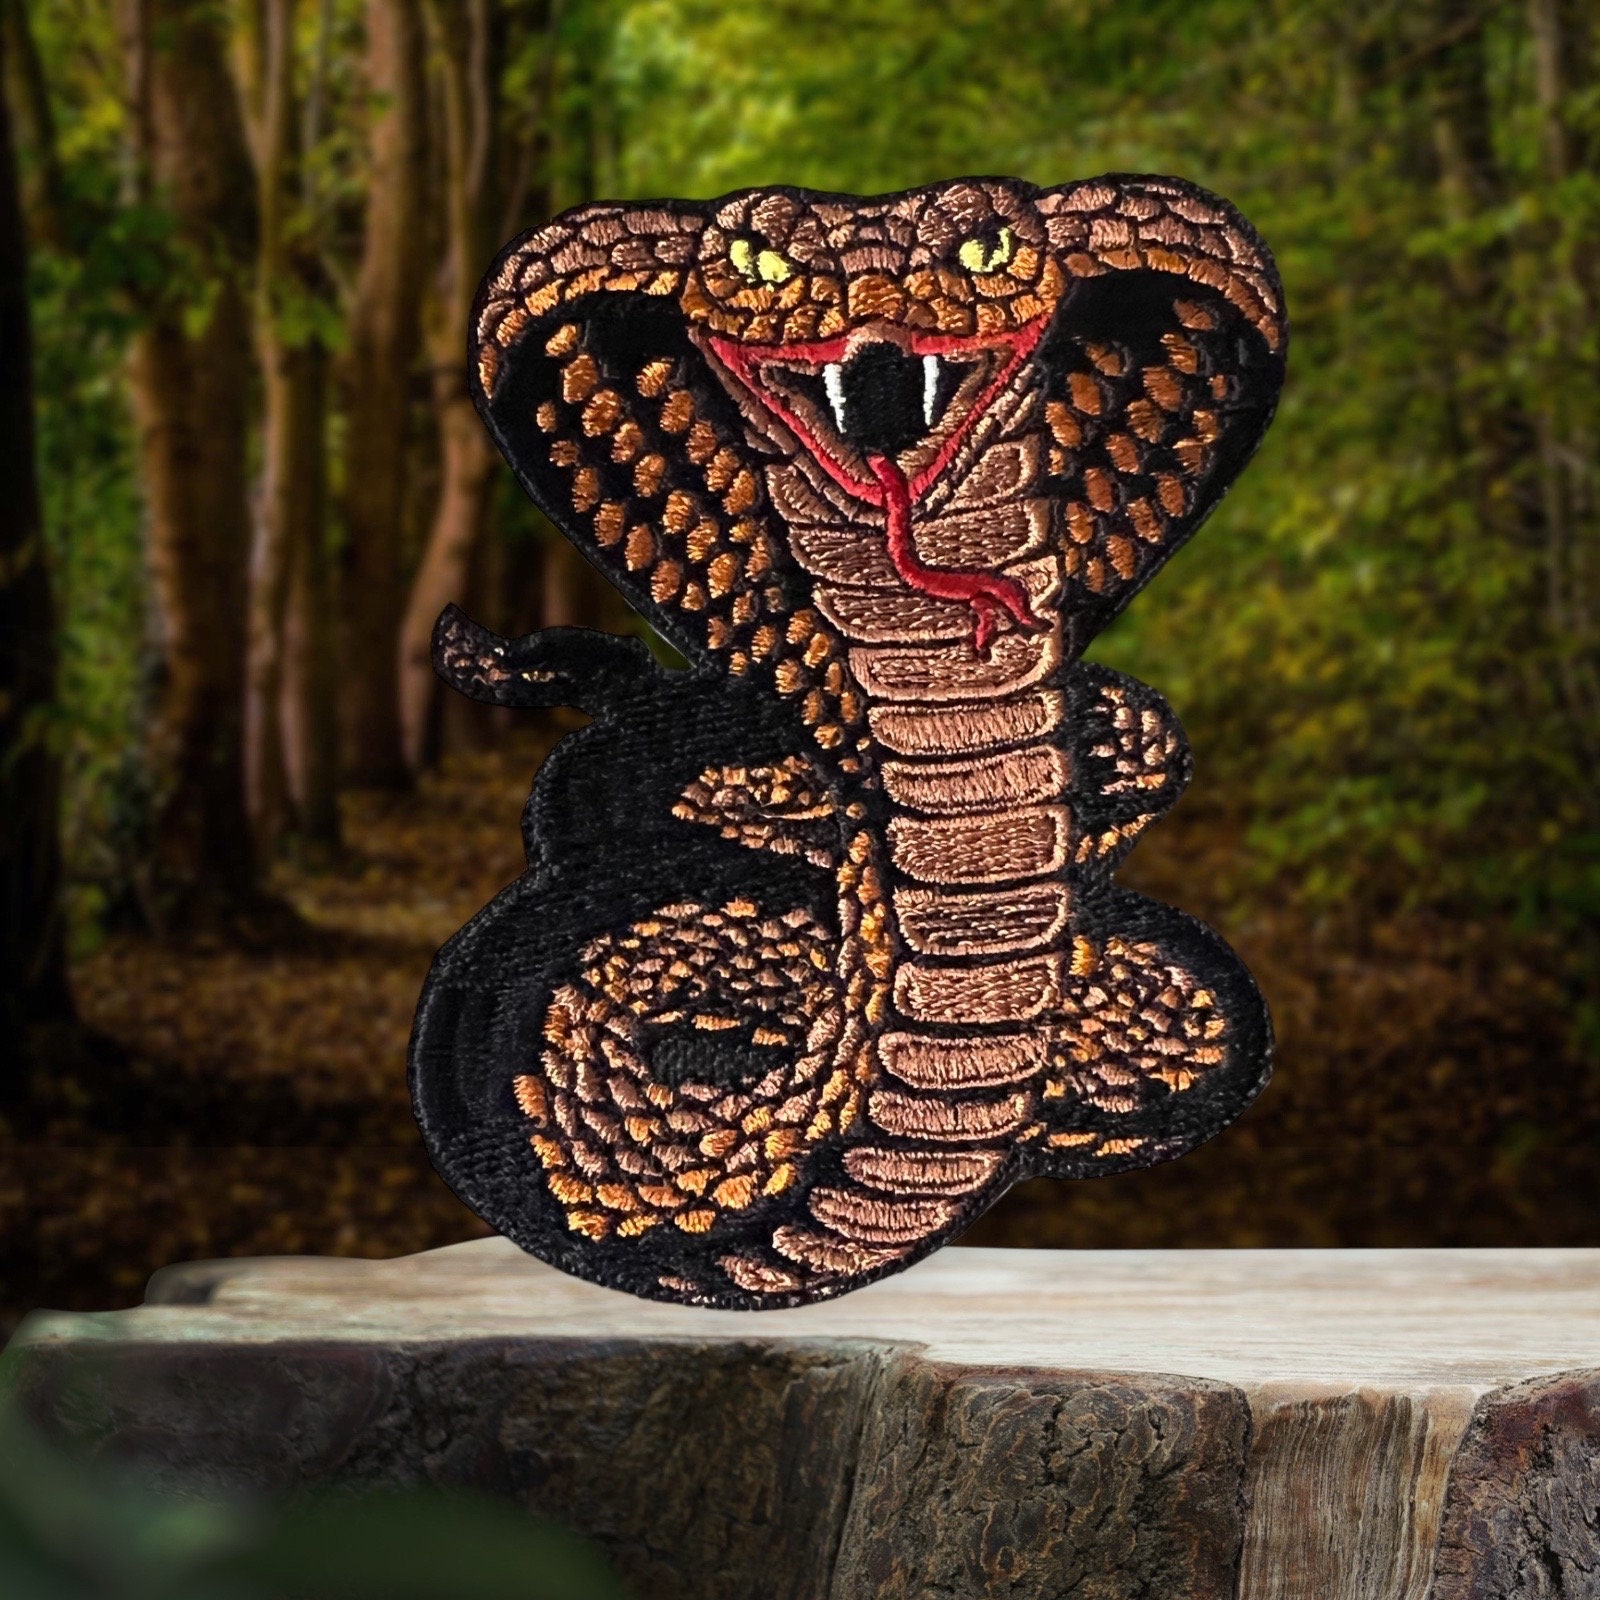 Buy King Cobra Snake Online In India -  India